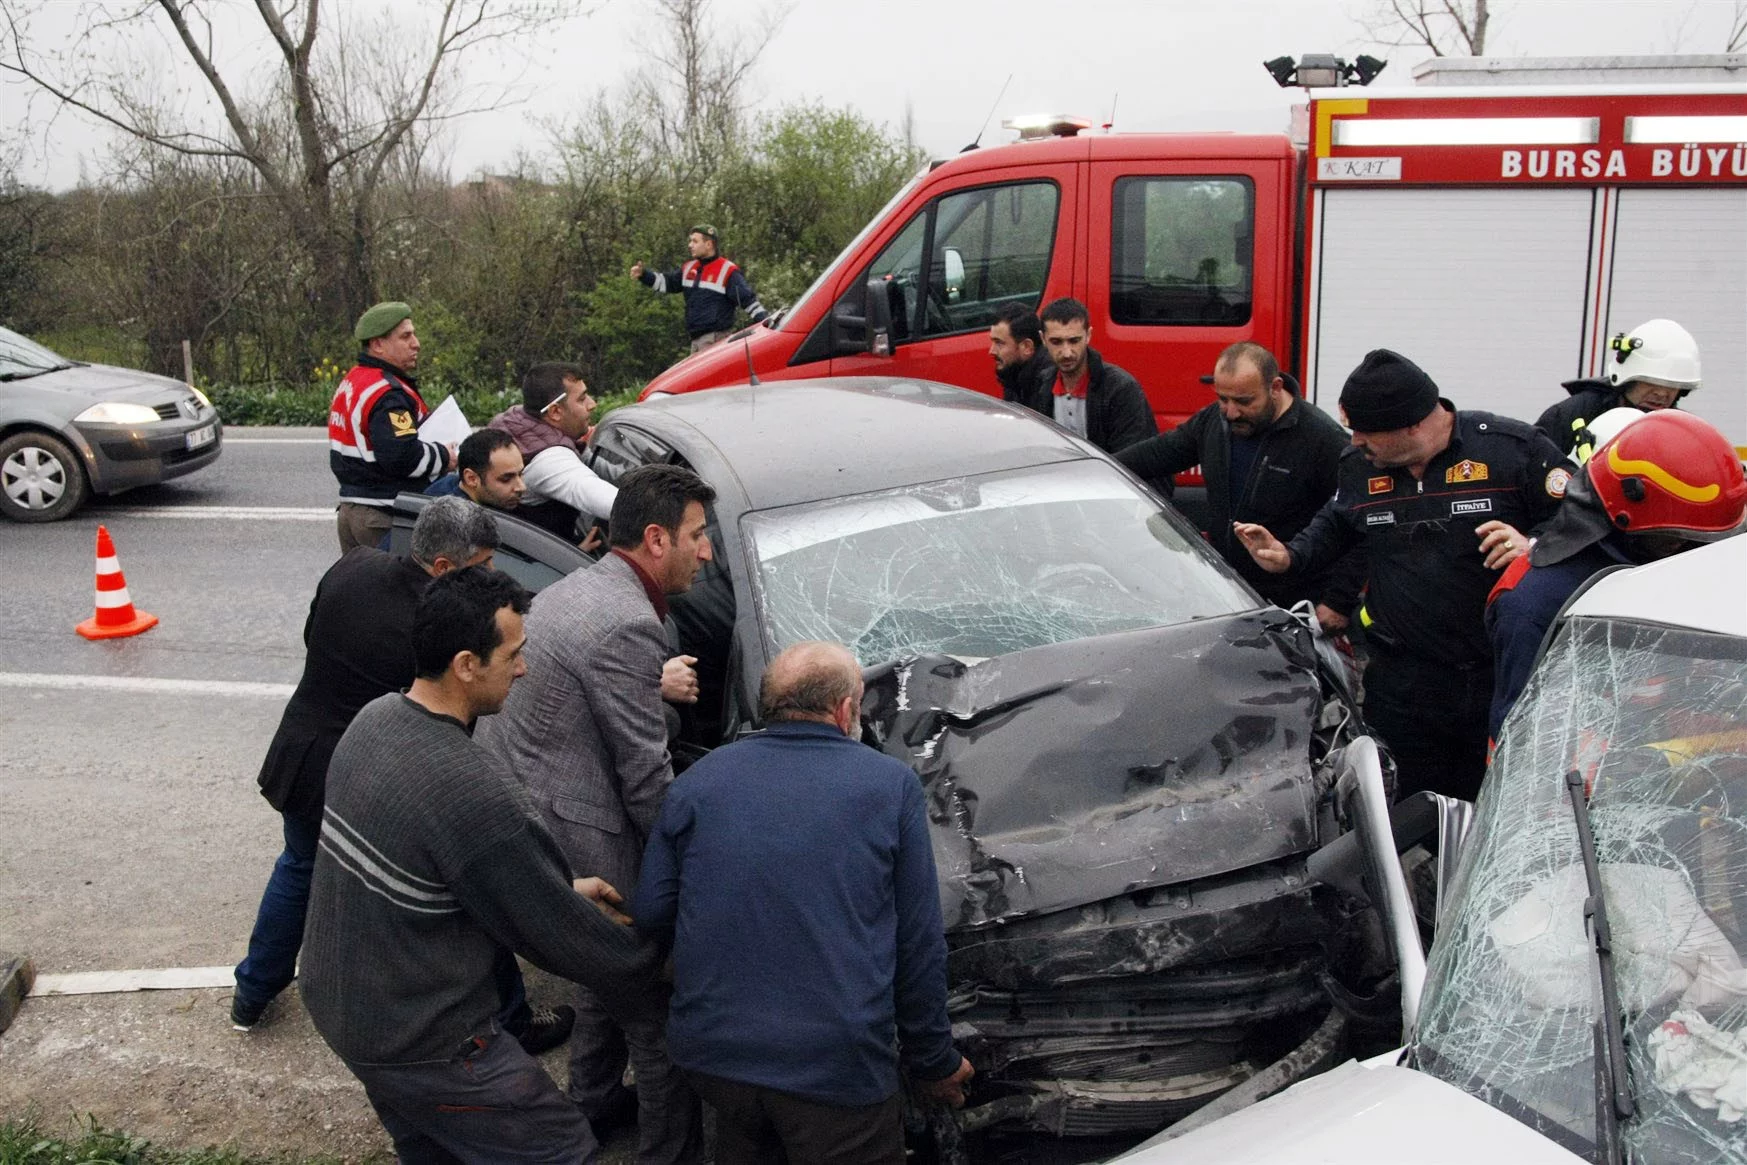 Bursa'da kahreden kaza: 1 ölü, 7 yaralı